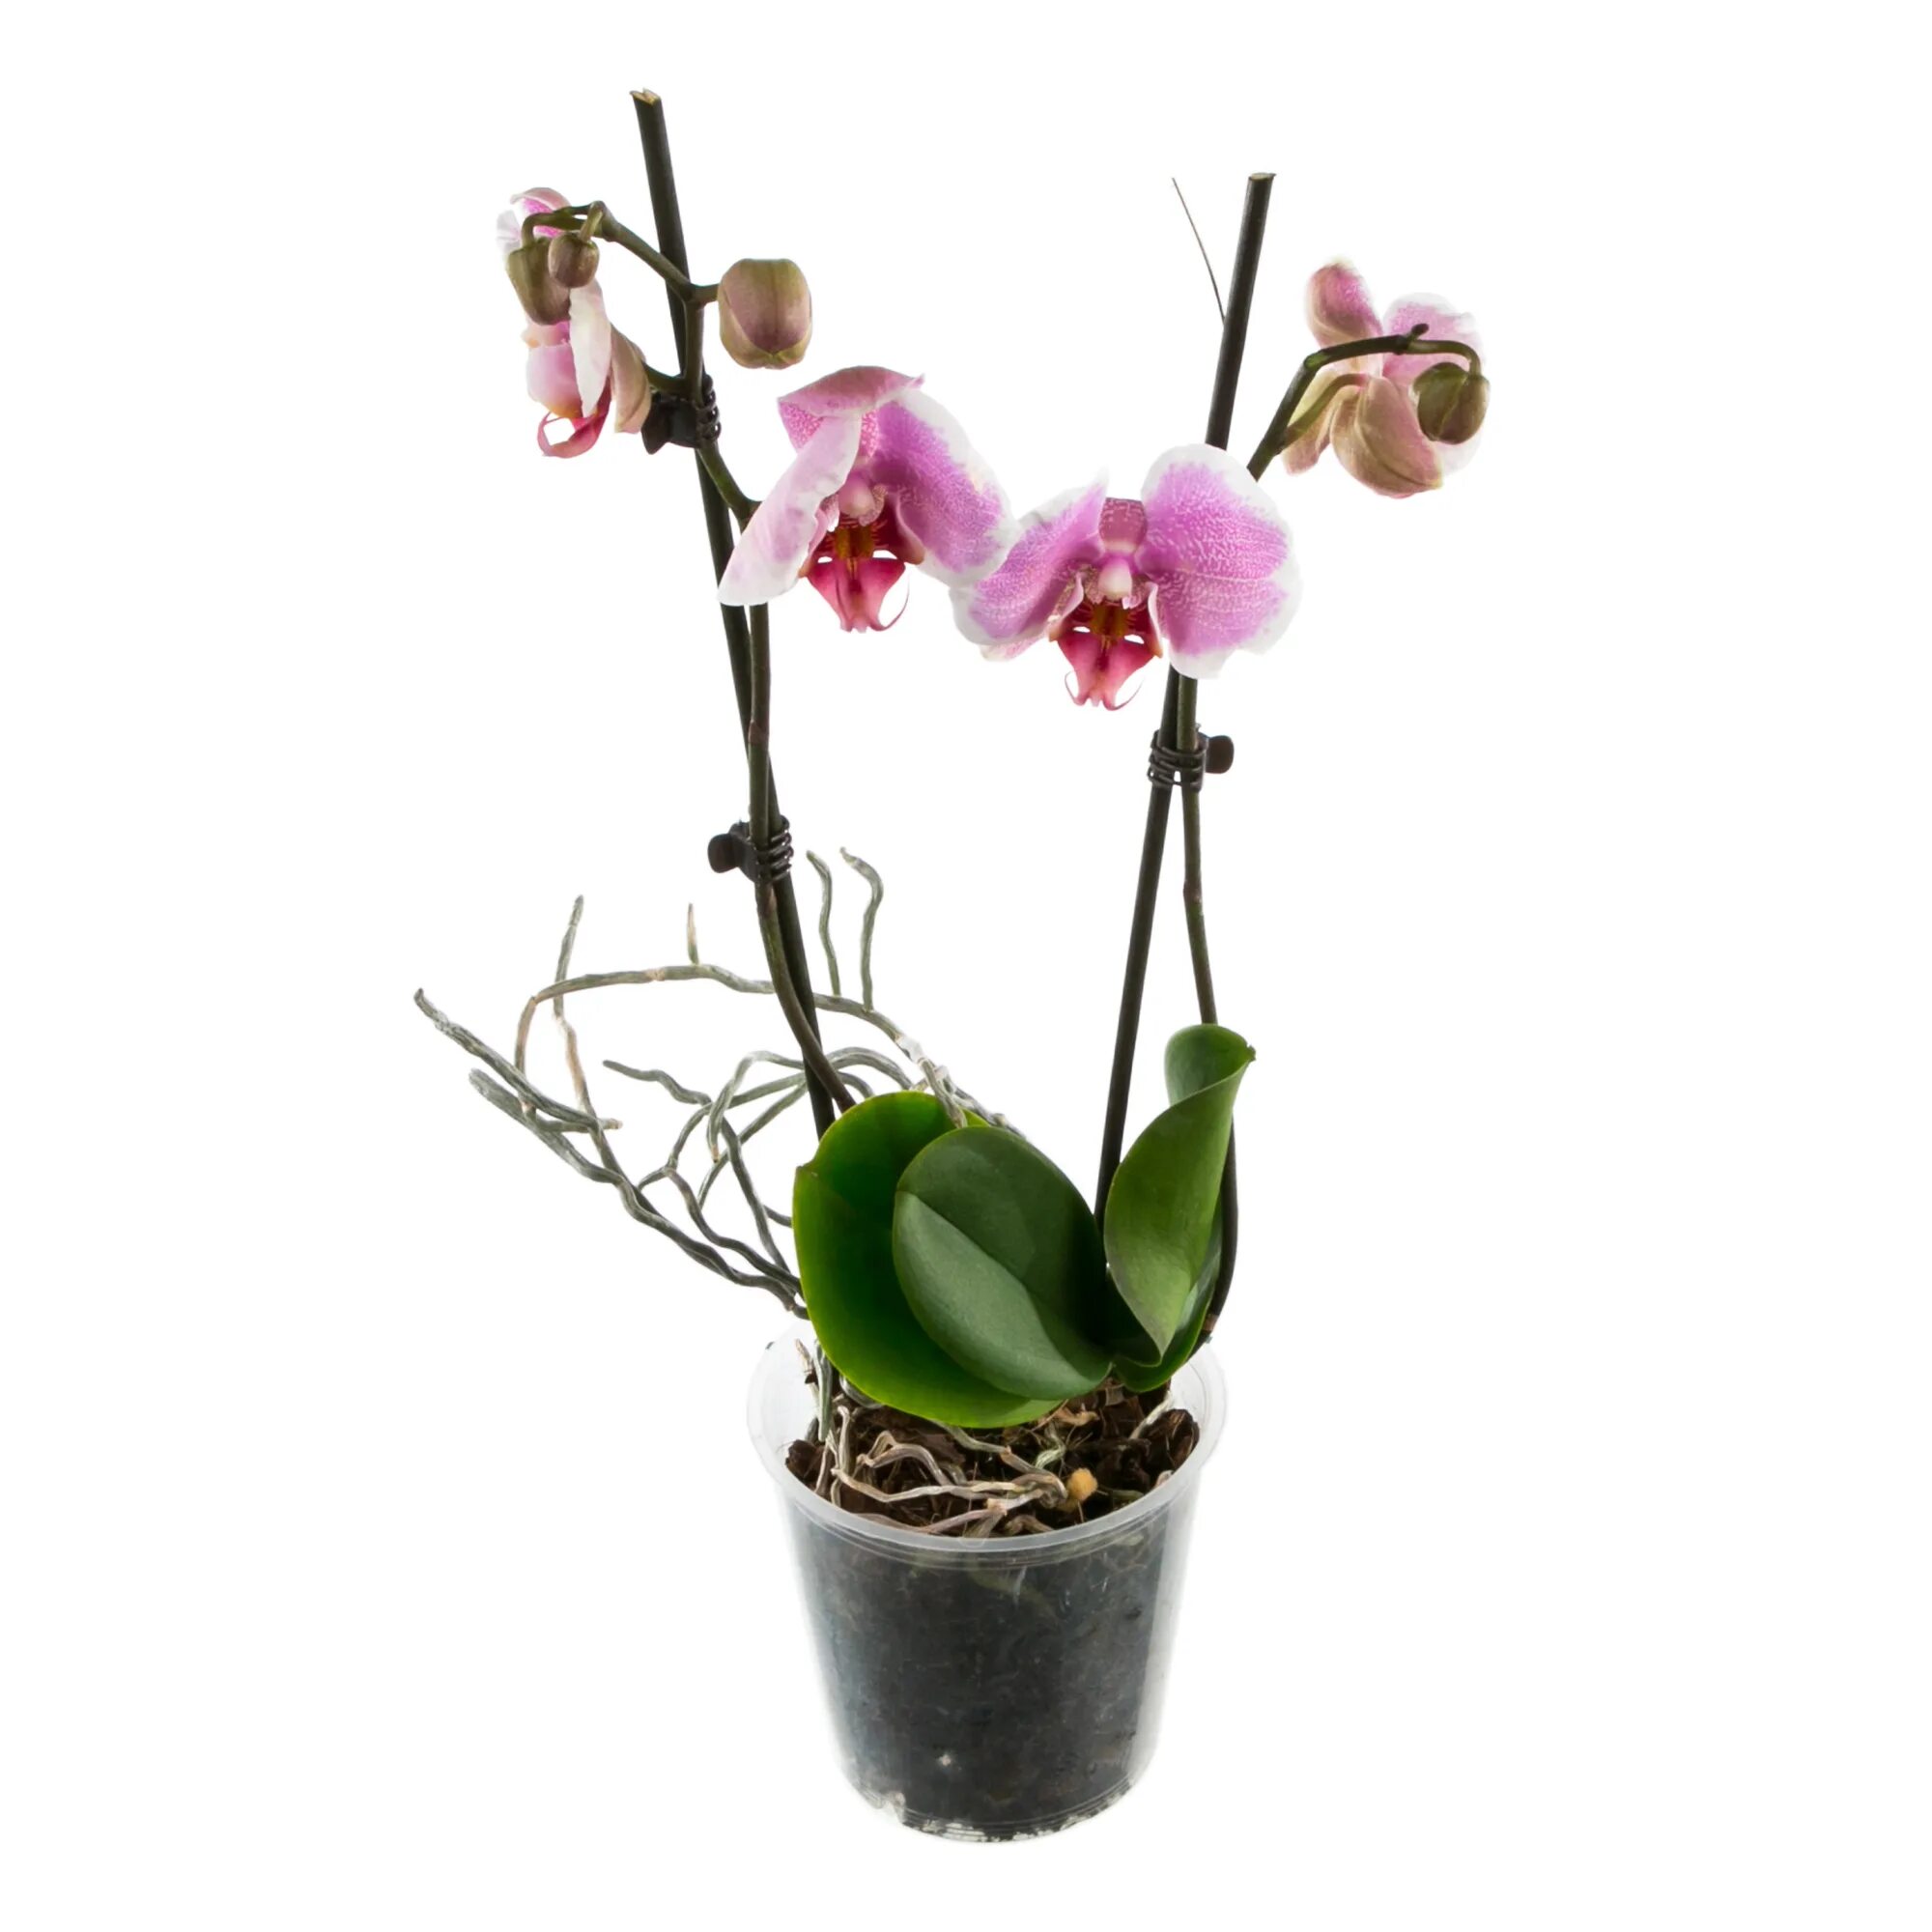 Орхидея в горшке недорого в спб. Орхидея фаленопсис микс. Фаленопсис мини микс. Орхидеи в Леруа Мерлен. Орхидея фаленопсис мини микс.